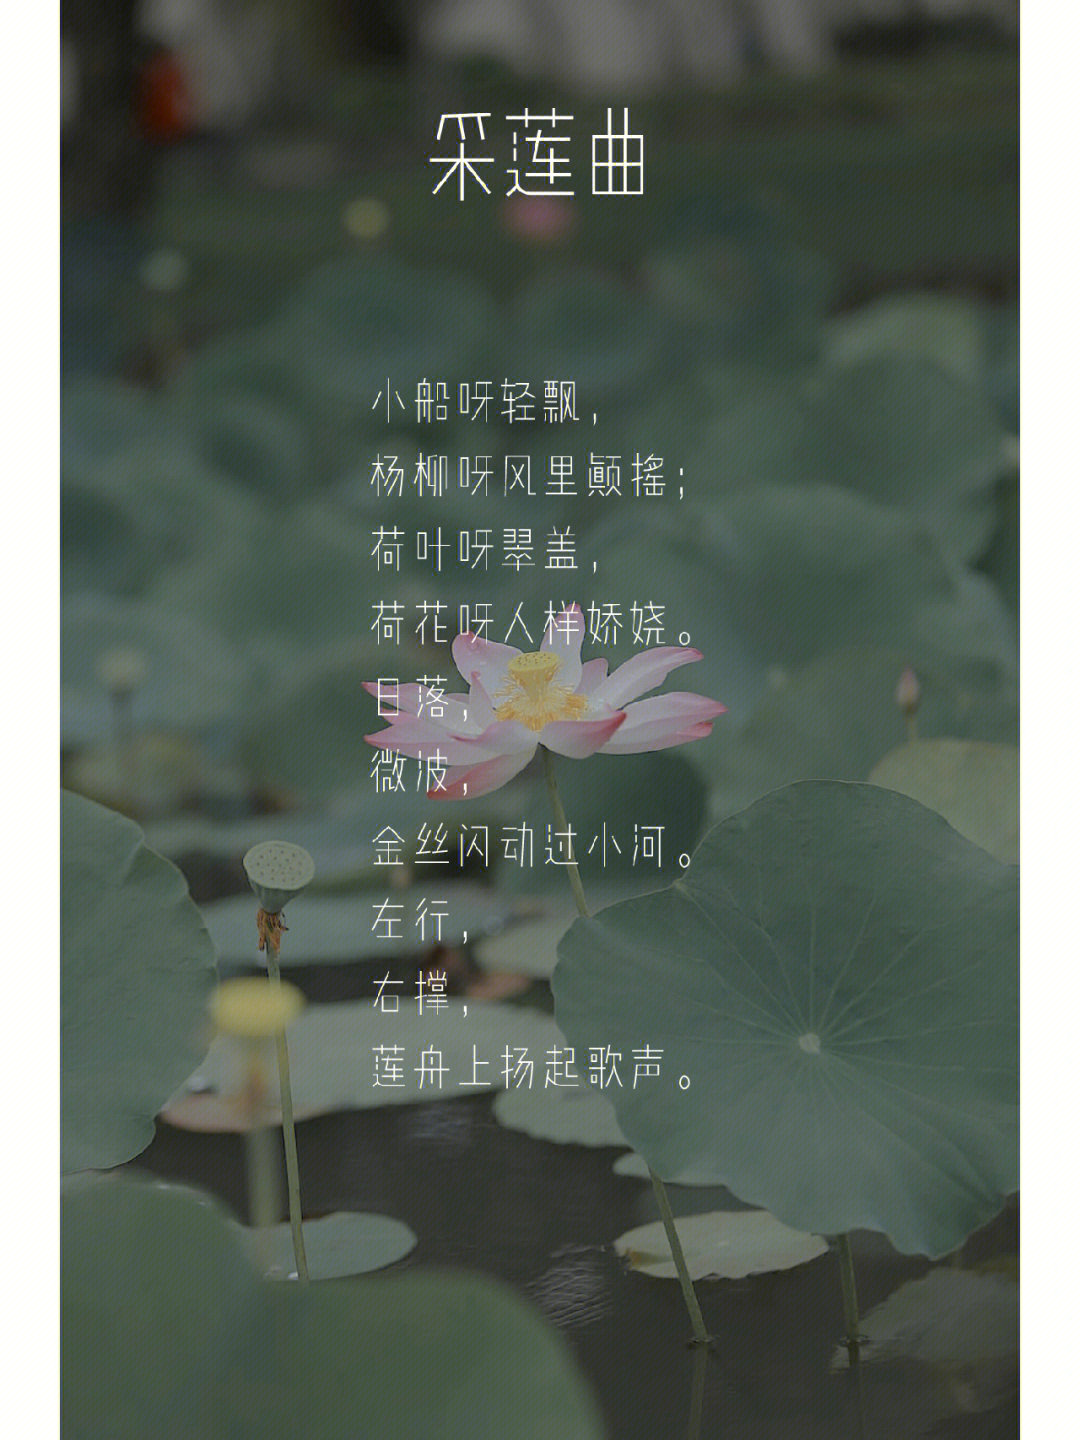 重读中国20世纪诗歌15朱湘采莲曲